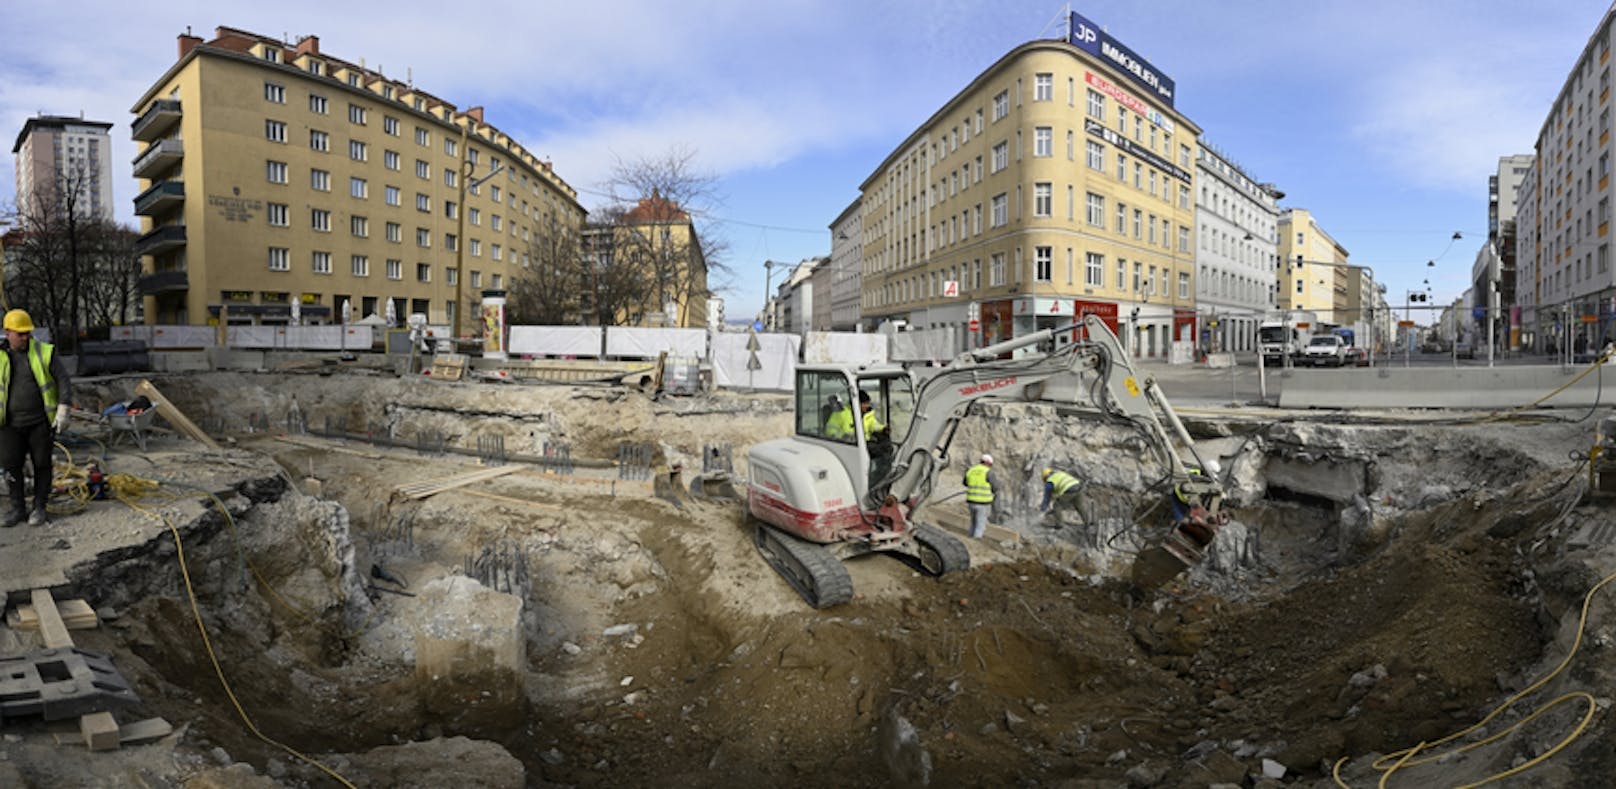 Die Bauarbeiten am Matzleinsdorfer Platz gehen weiter.